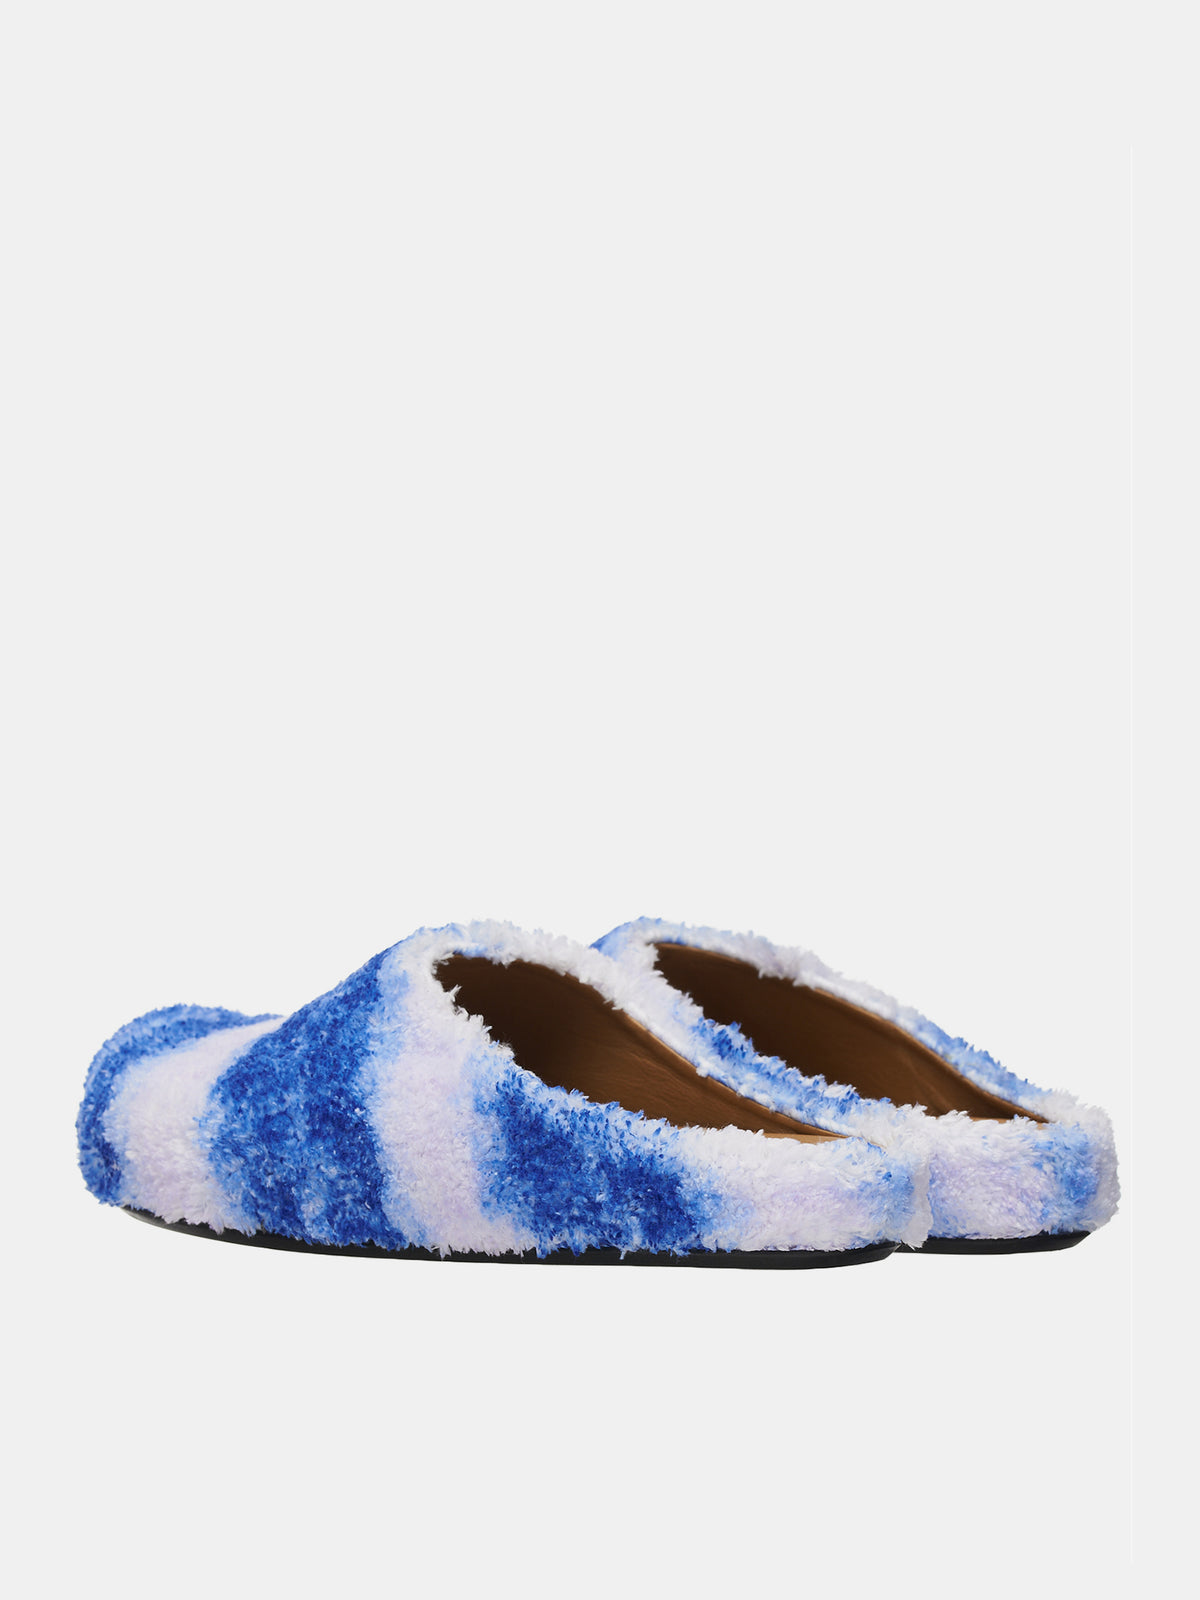 Stripe Fusset Sabbot Loafers (SBMR000600-P5516-BLUE)